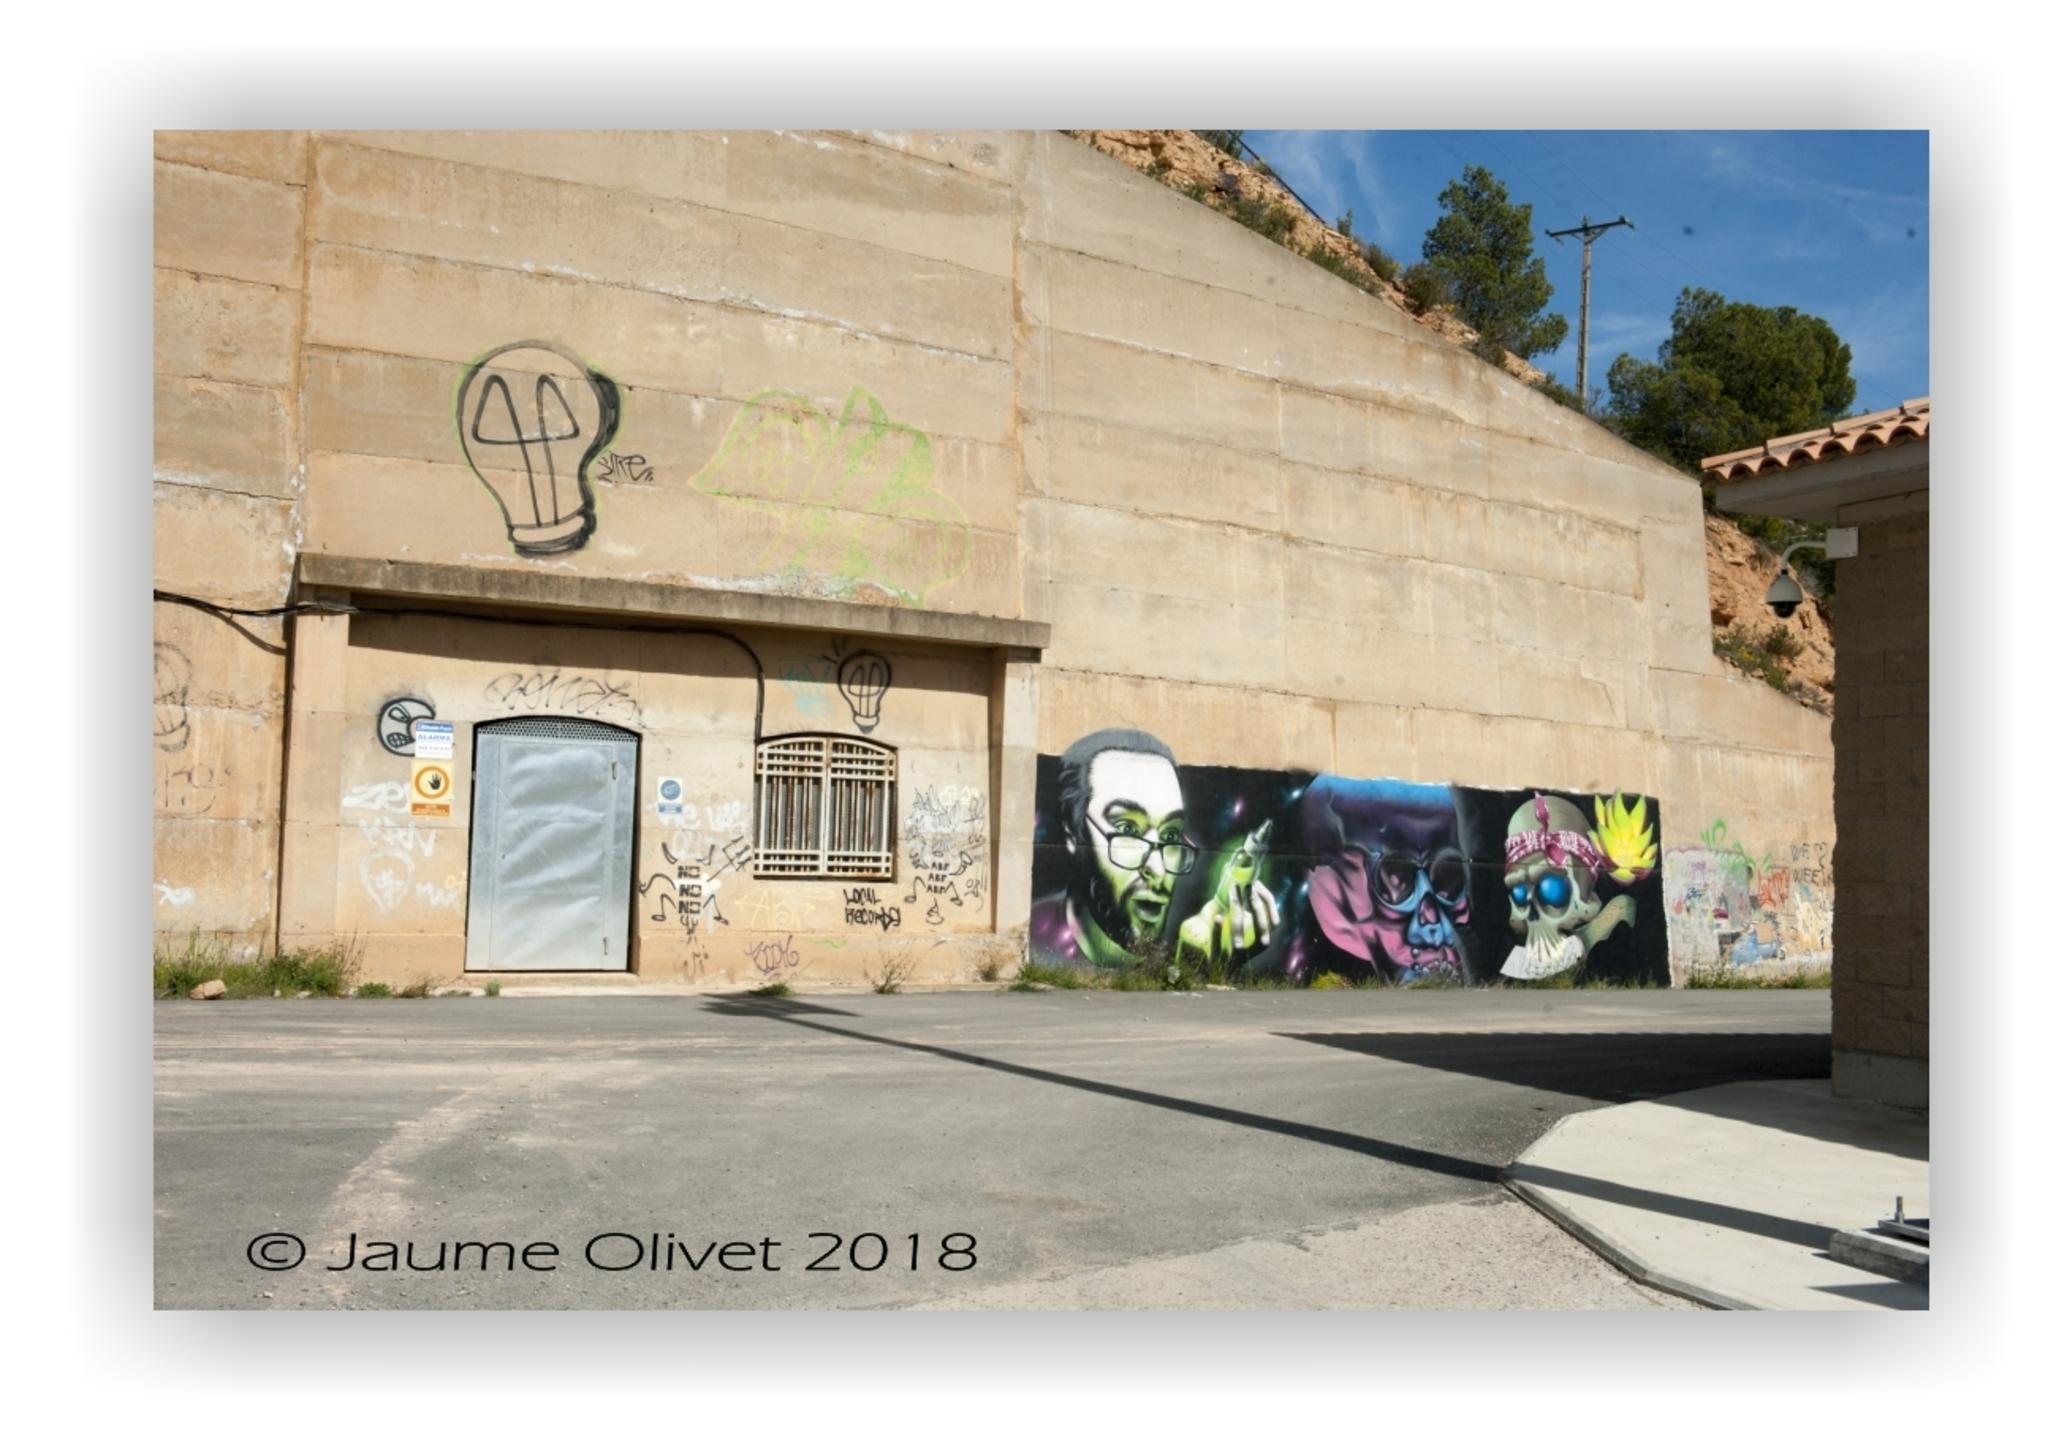  Jaume Olivet 2018